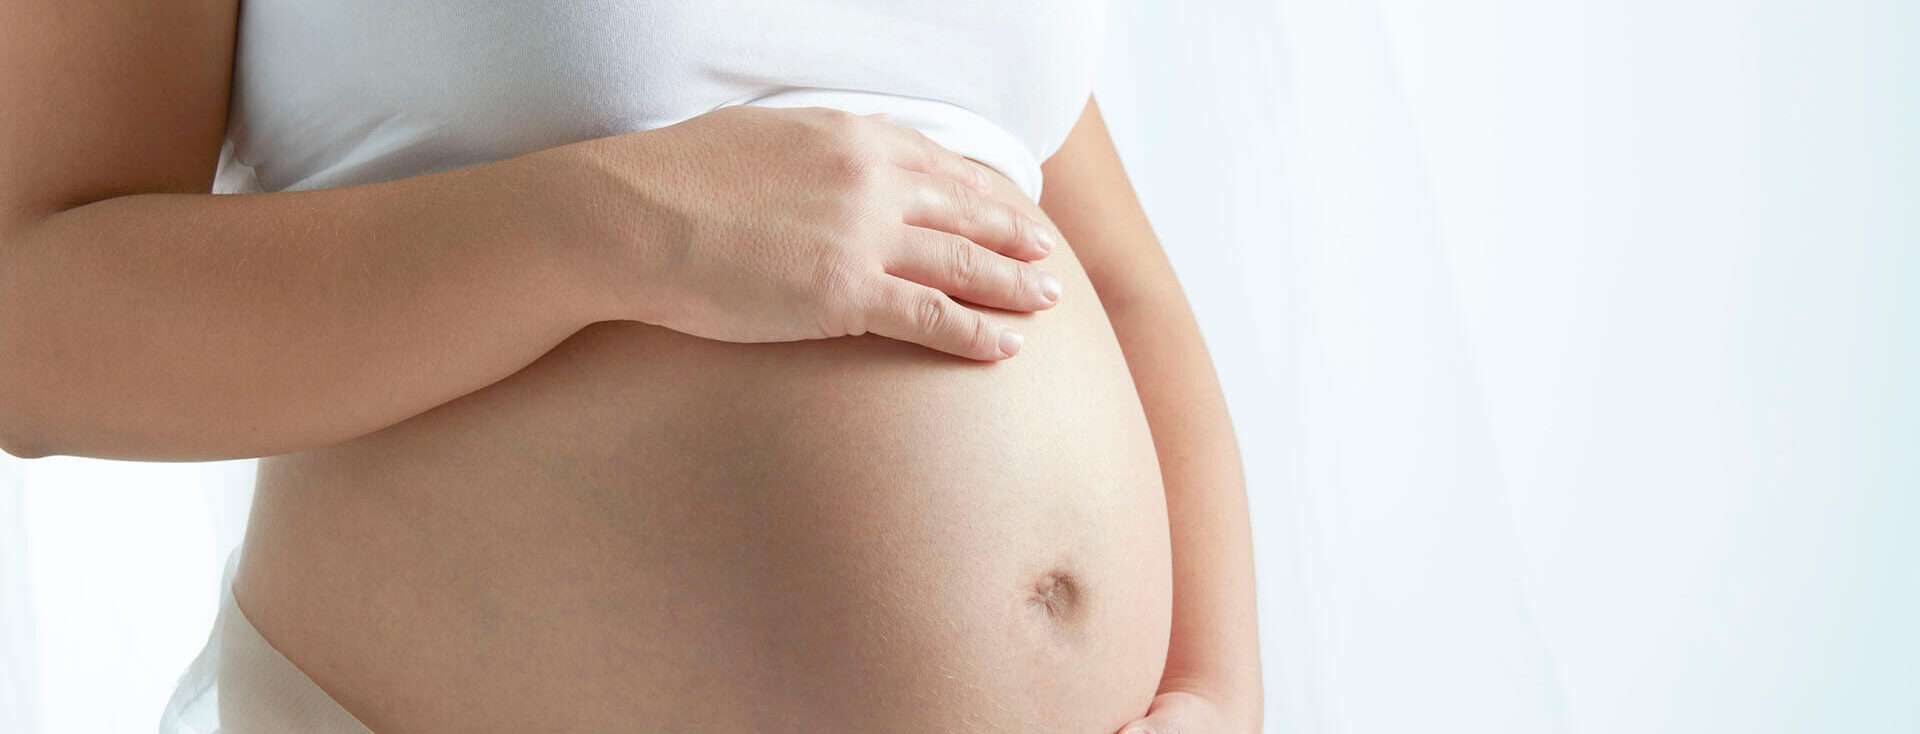 Mulher grávida e os diferentes tipos de parto